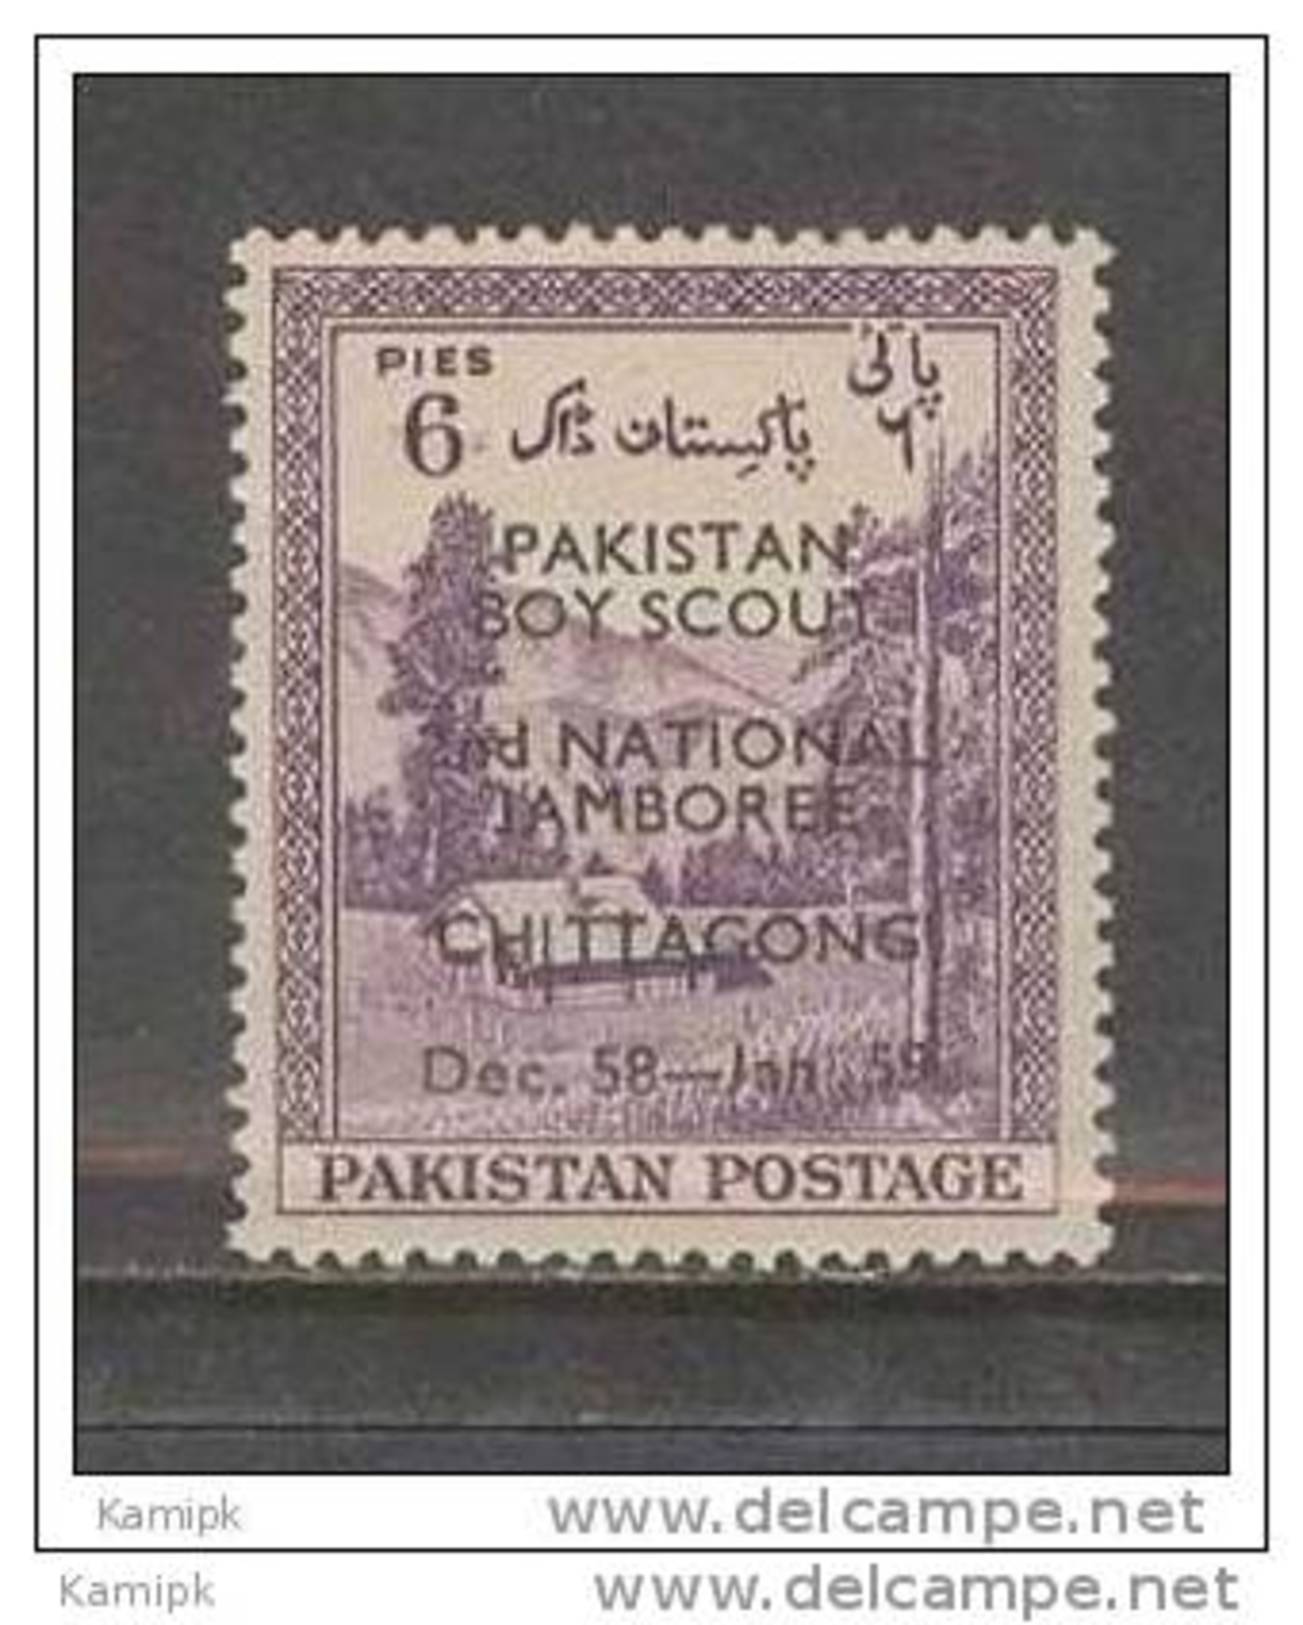 PAKISTAN MNH(**) STAMPS (2ND NATIONAL JAMBOREE OF PAKISTAN SCOUTS -1958) - Pakistan